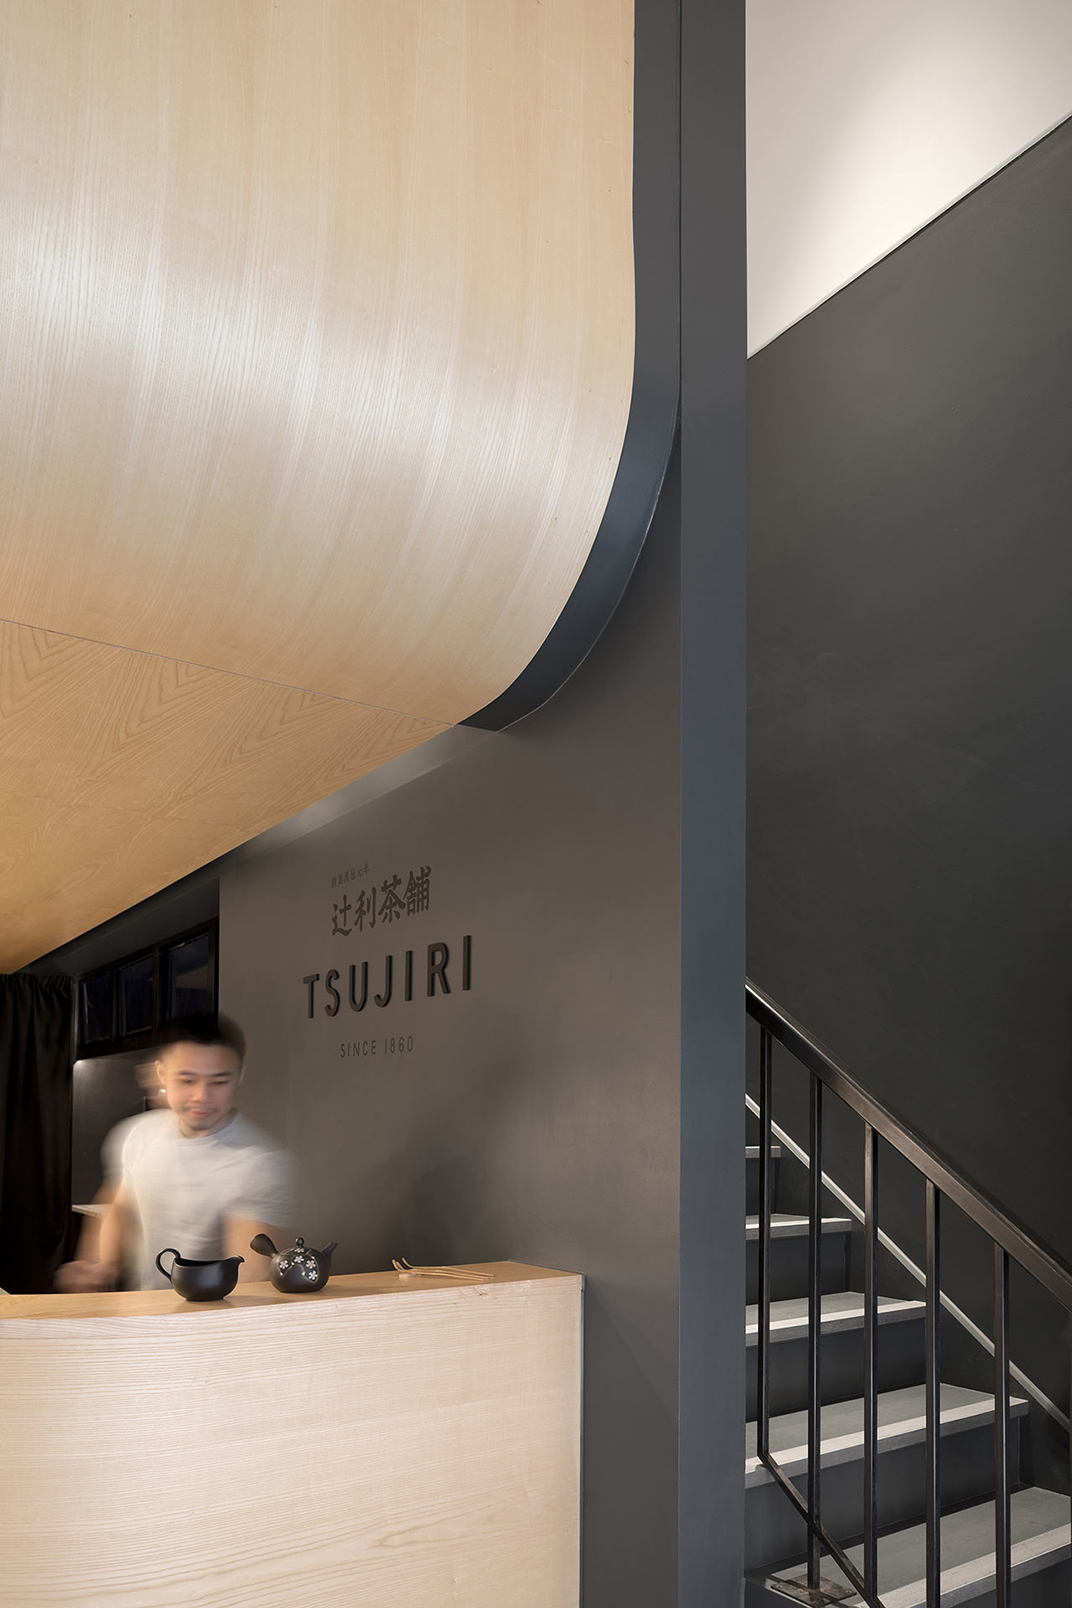 伦敦 Tsujiri 日本茶馆 茶铺 英国  北京 上海 珠海 广州 武汉 杭州 佛山 香港 澳门 logo设计 vi设计 空间设计